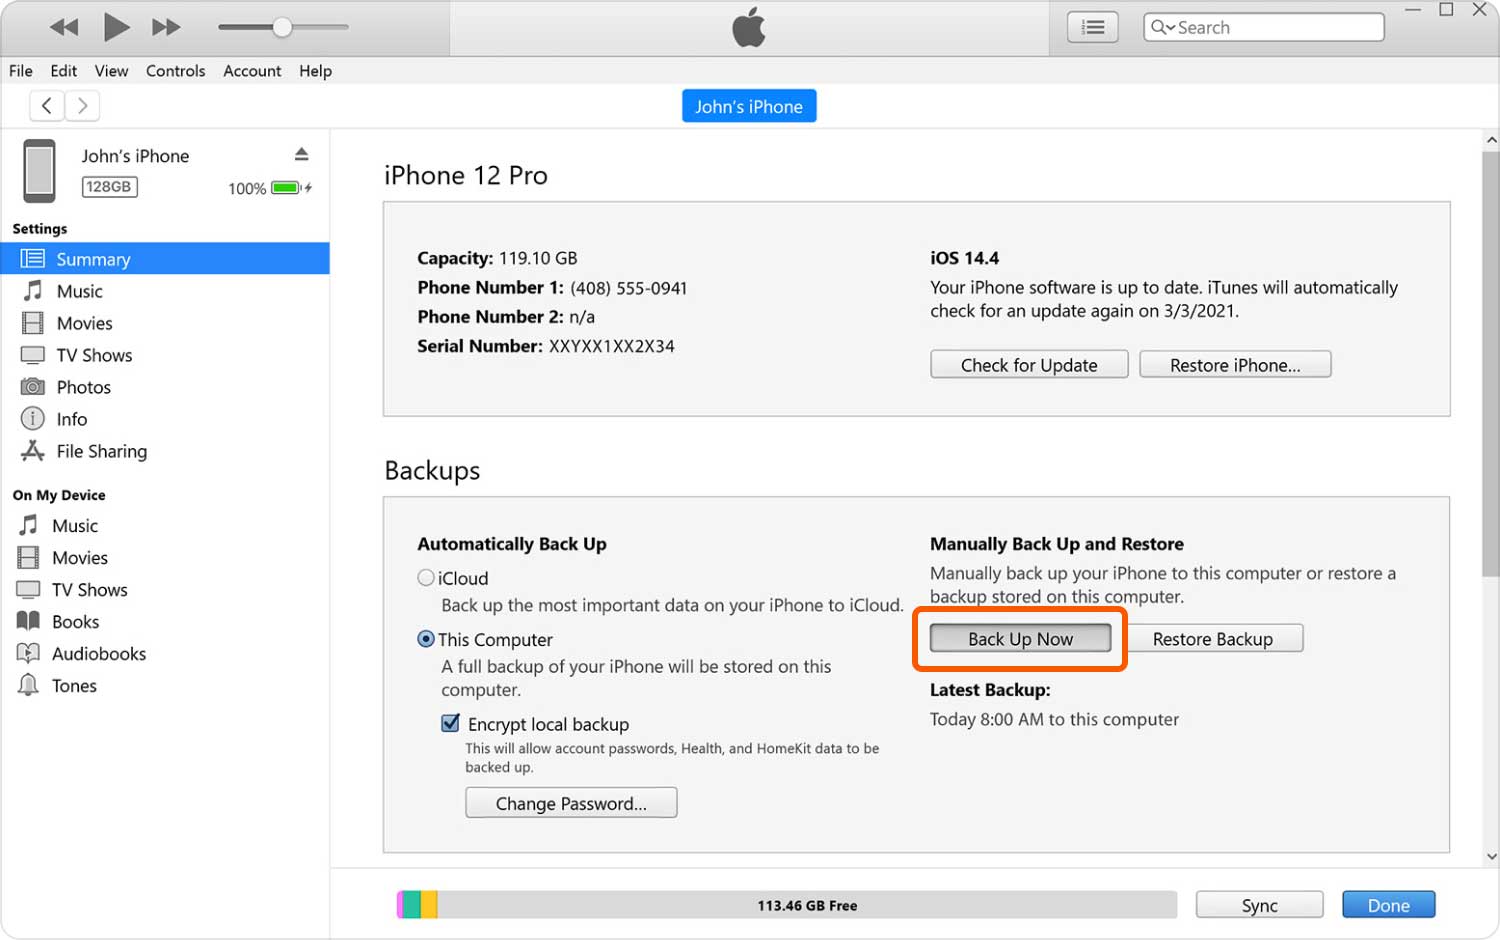 Copia de seguridad de iPhone con iTunes